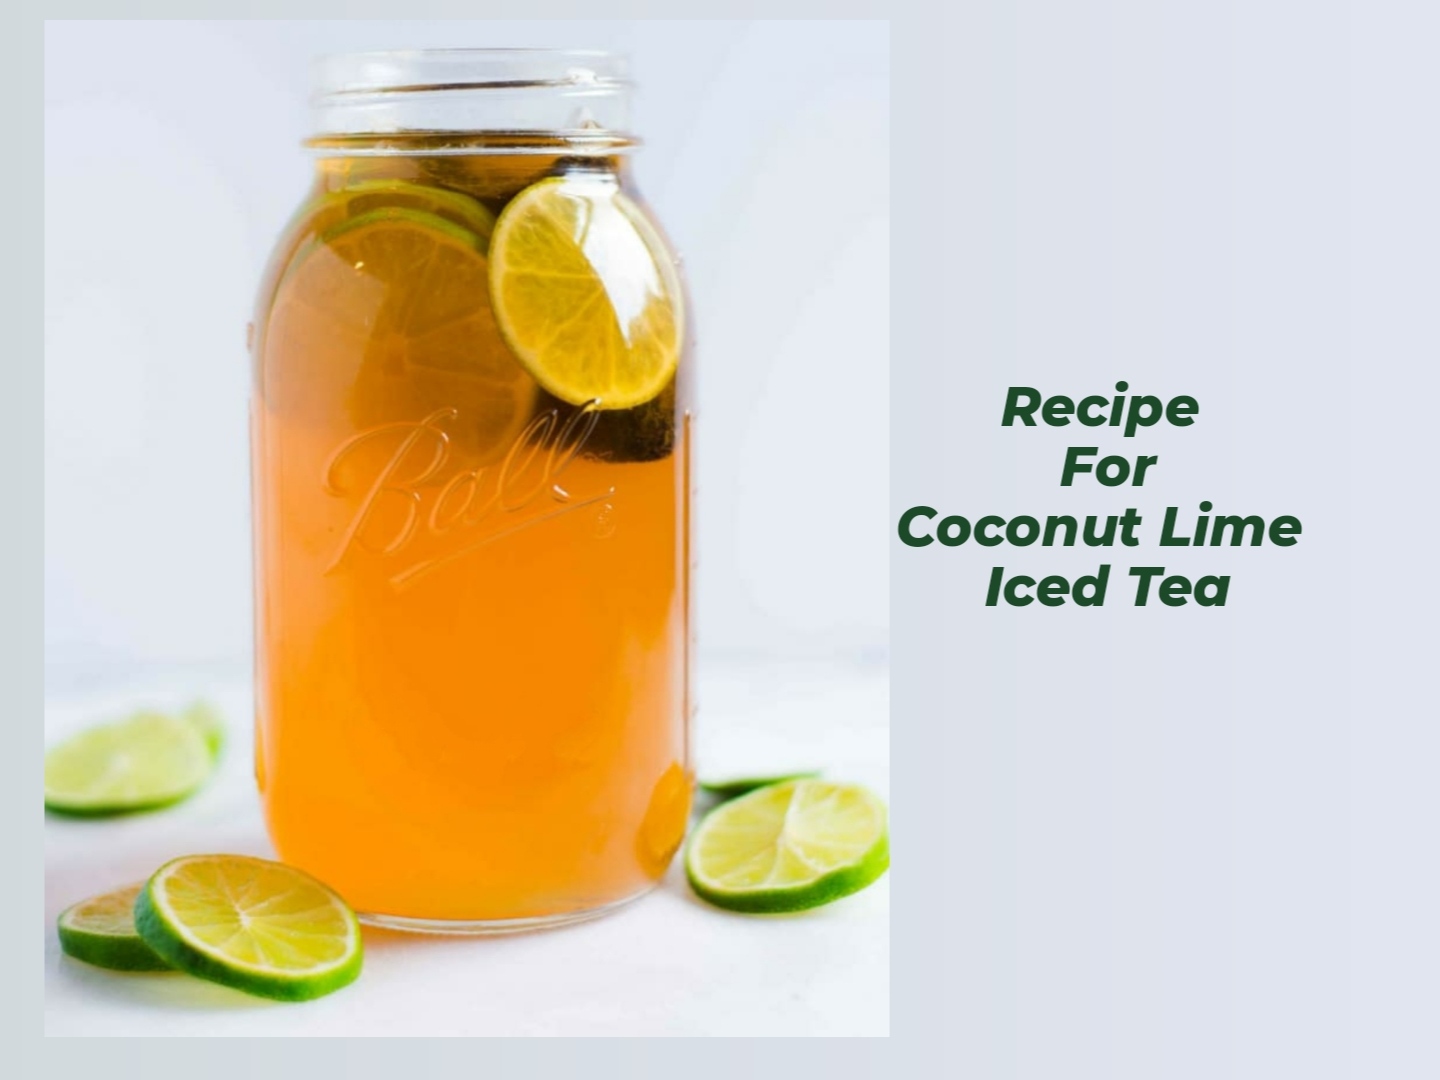 Coconut Lime Iced Tea